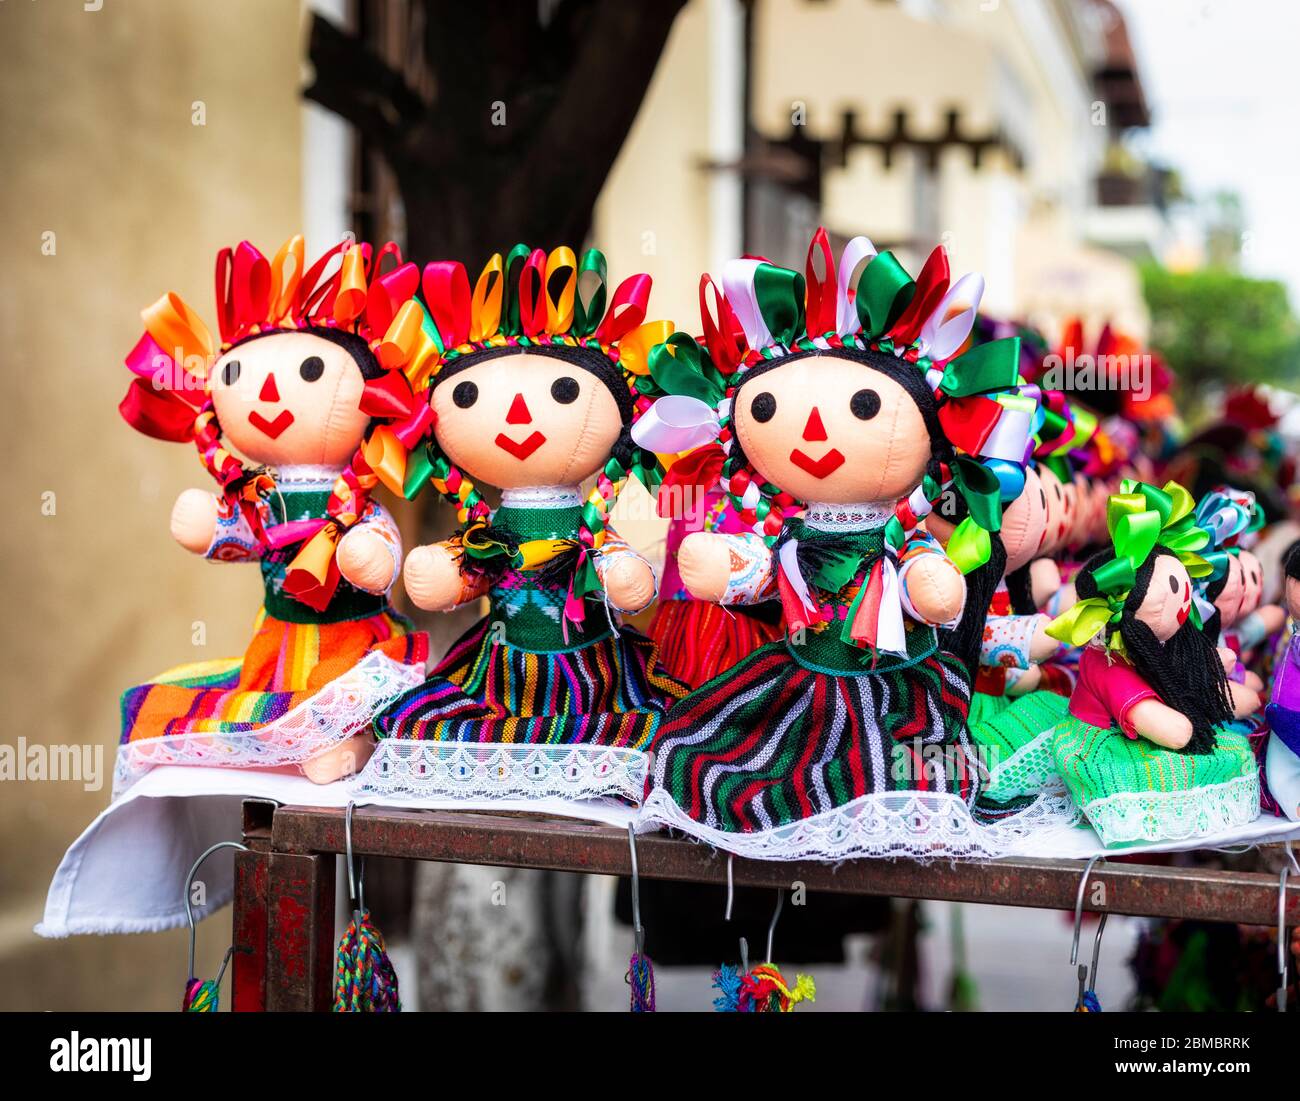 Poupées cousues à la main, habillées de façon traditionnelle, dans le marché de rue, Tlaquepaque, Jalisco, Mexique. Banque D'Images